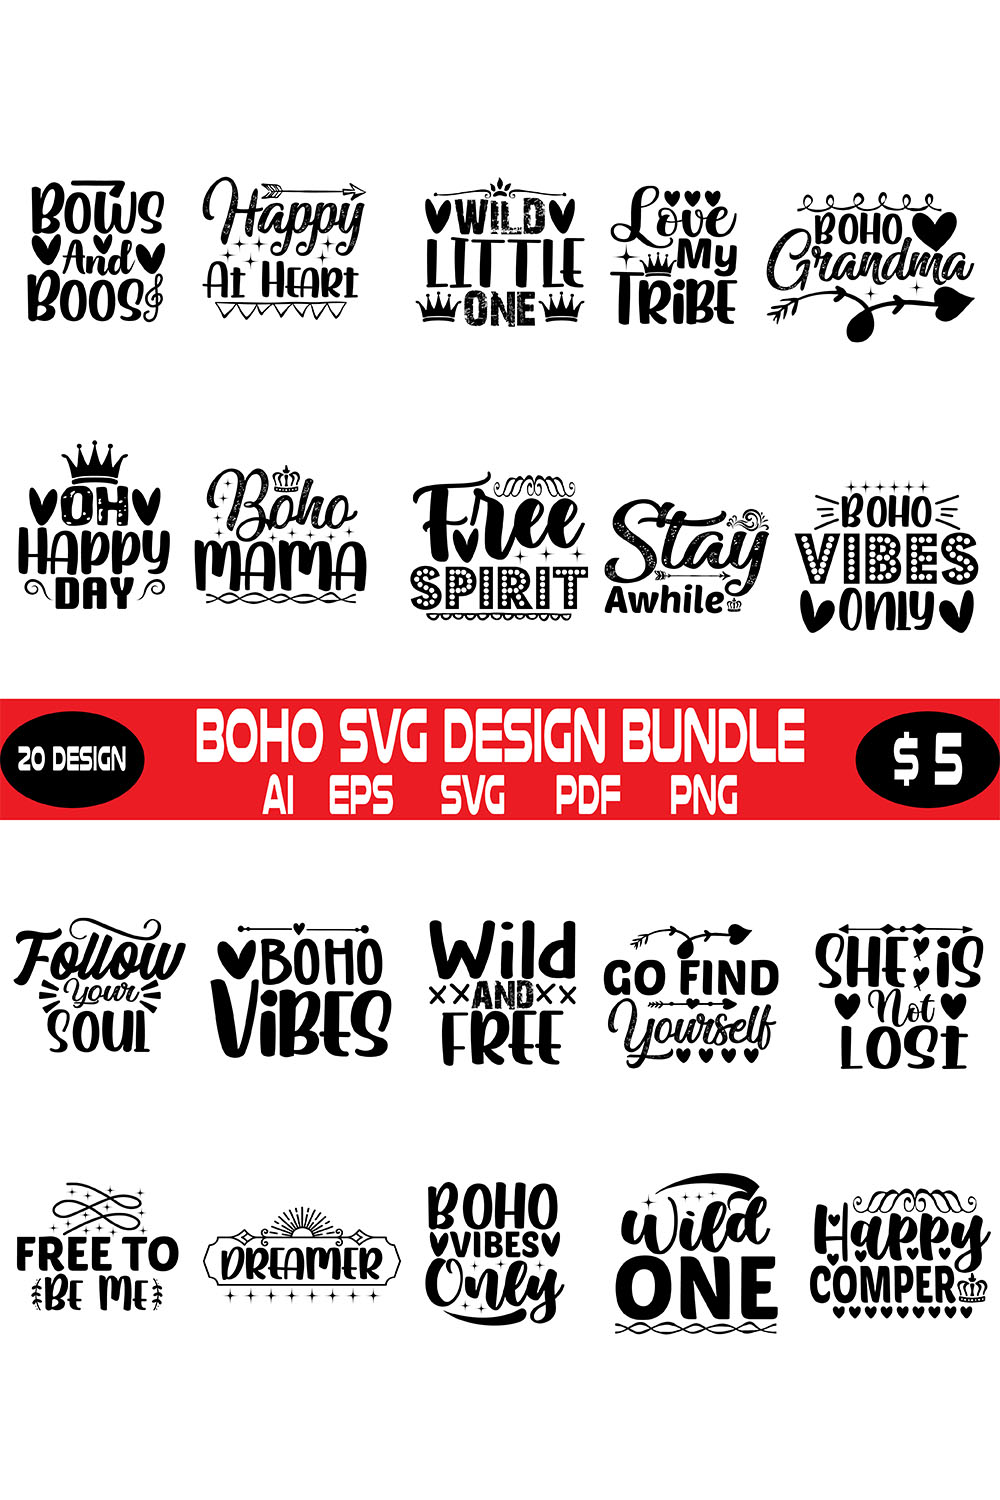 Boho Svg Design Bundle pinterest preview image.